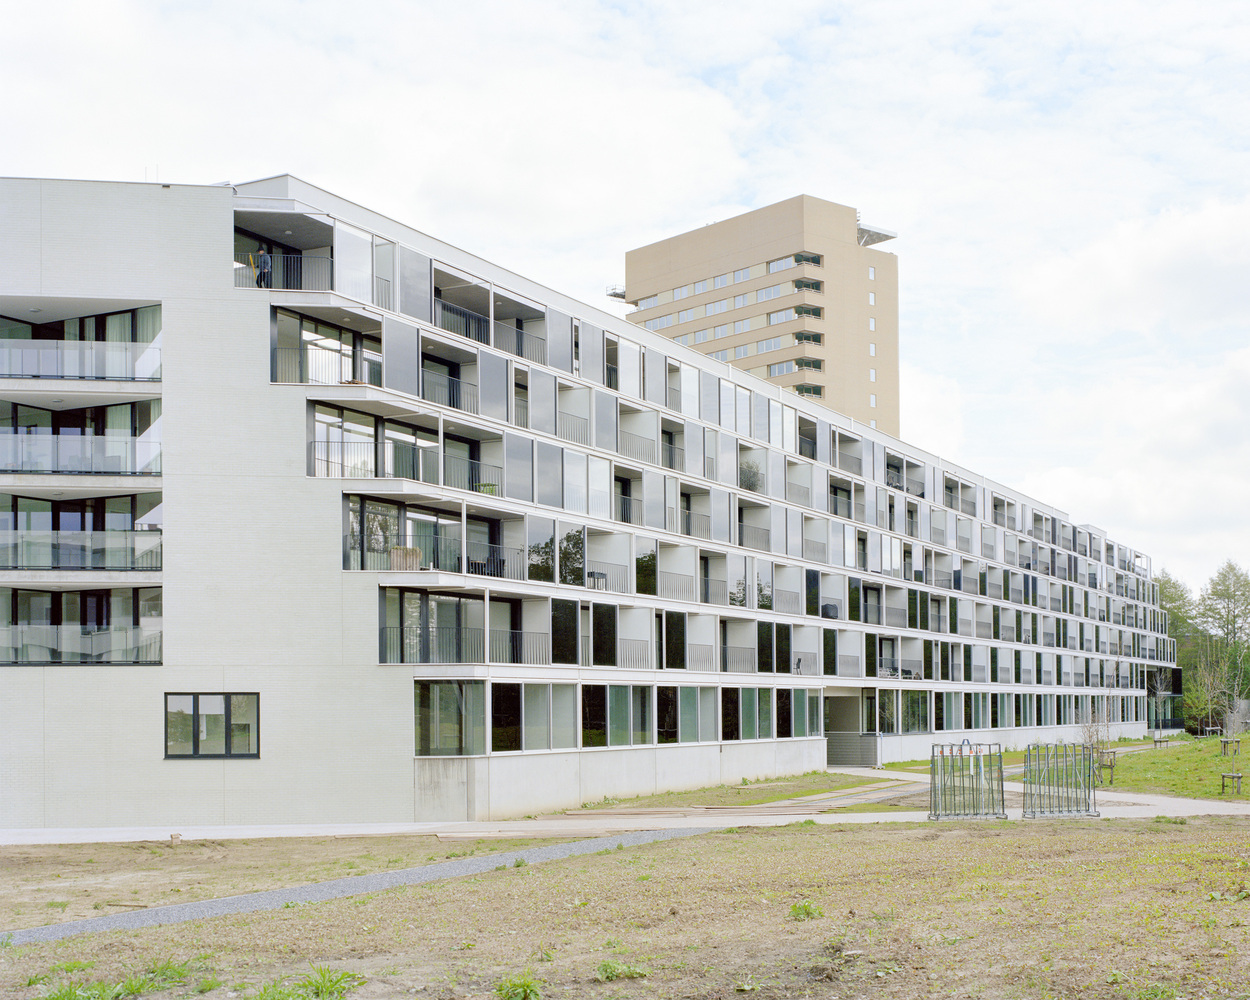 tweewater-housing-xdga-xaveer-de-geyter-architects_9